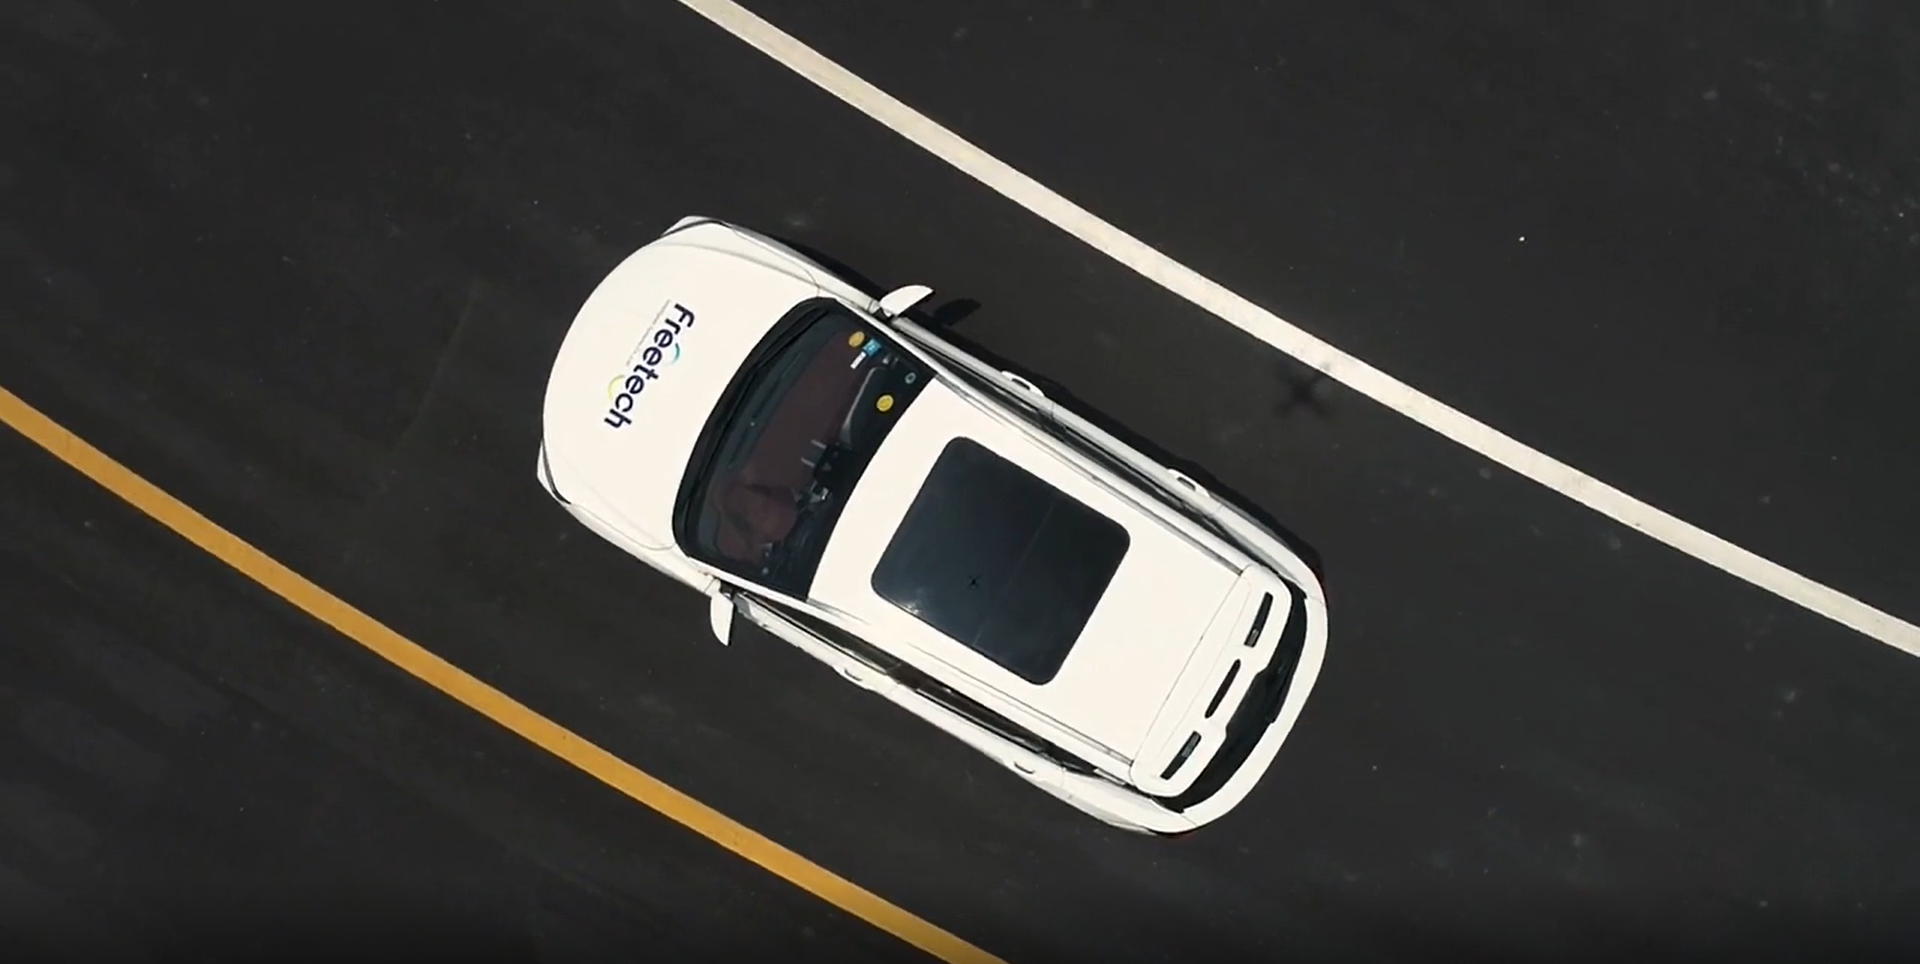 Autonomous driving startup Freetech lands USD 100 million Series A